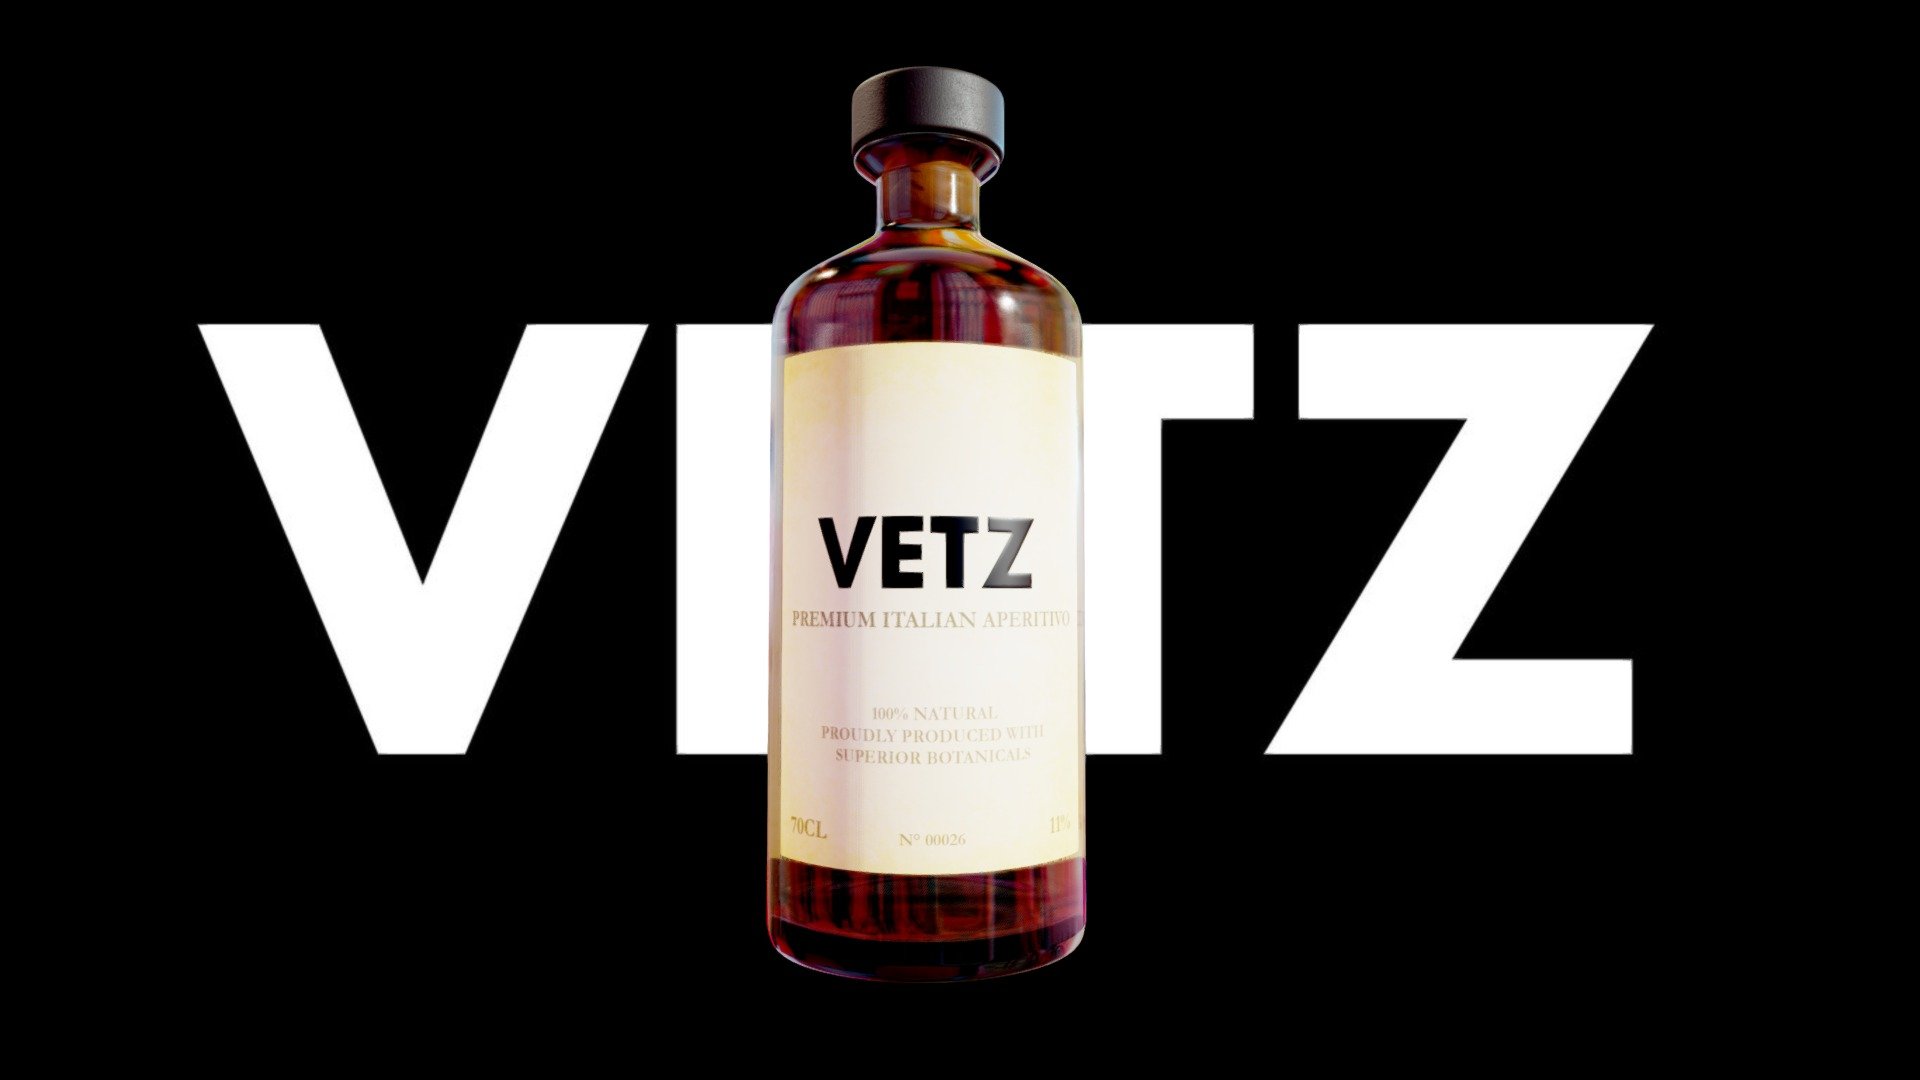 Vetz Bottle - 3D model by Mountrise 3d model